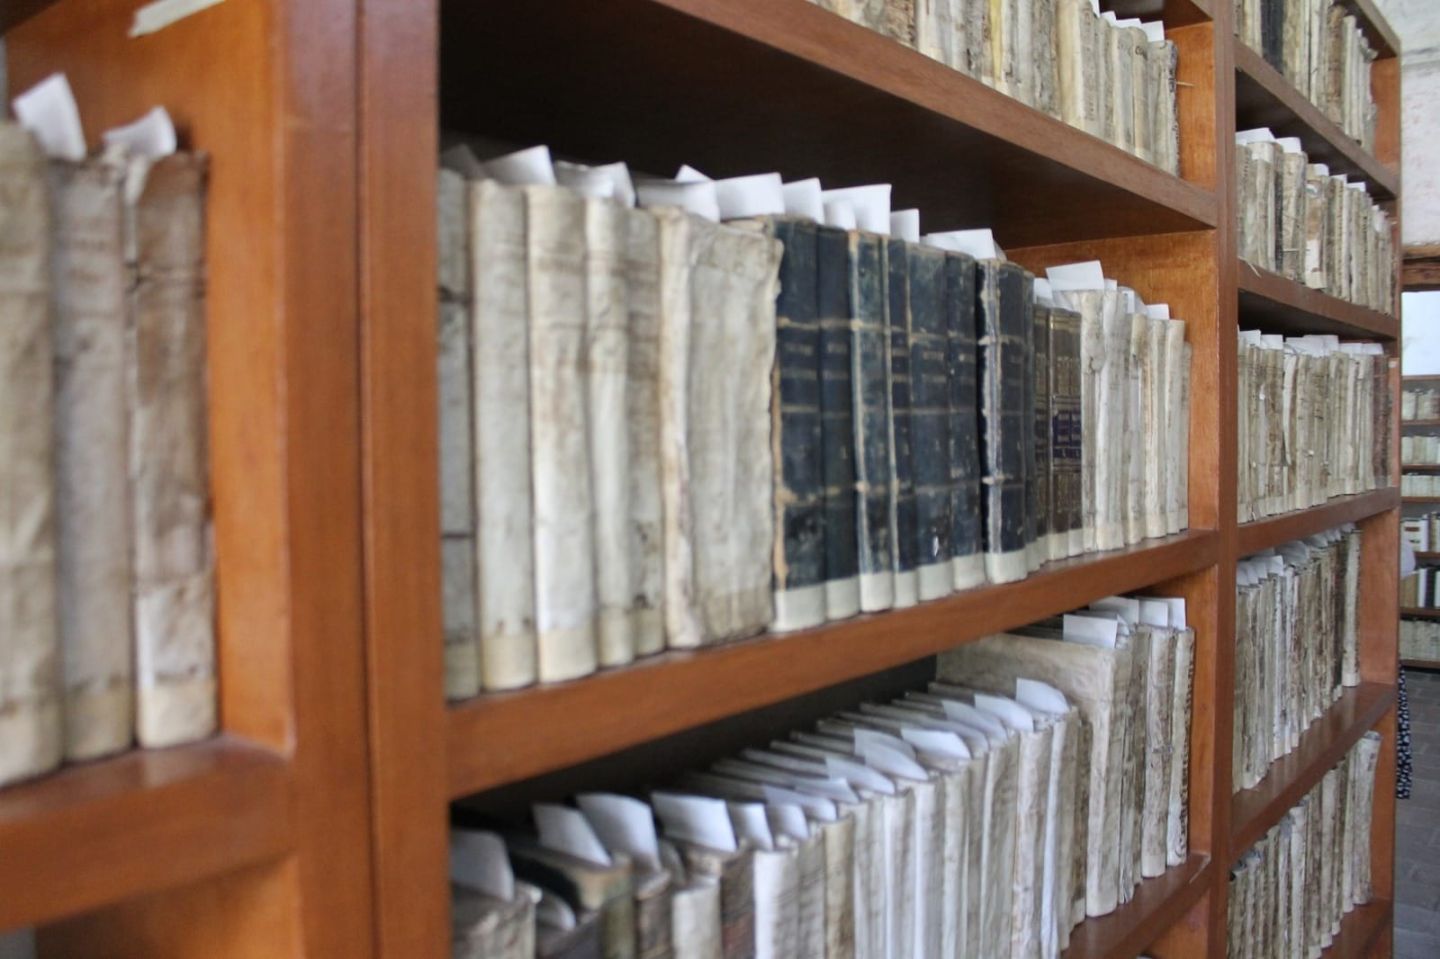 La Biblioteca Conventual del Museo Virreinal en Zinacantepec Ofrece
un Viaje a los Siglos XVI al XVIII a Través de los Libros que Resguarda